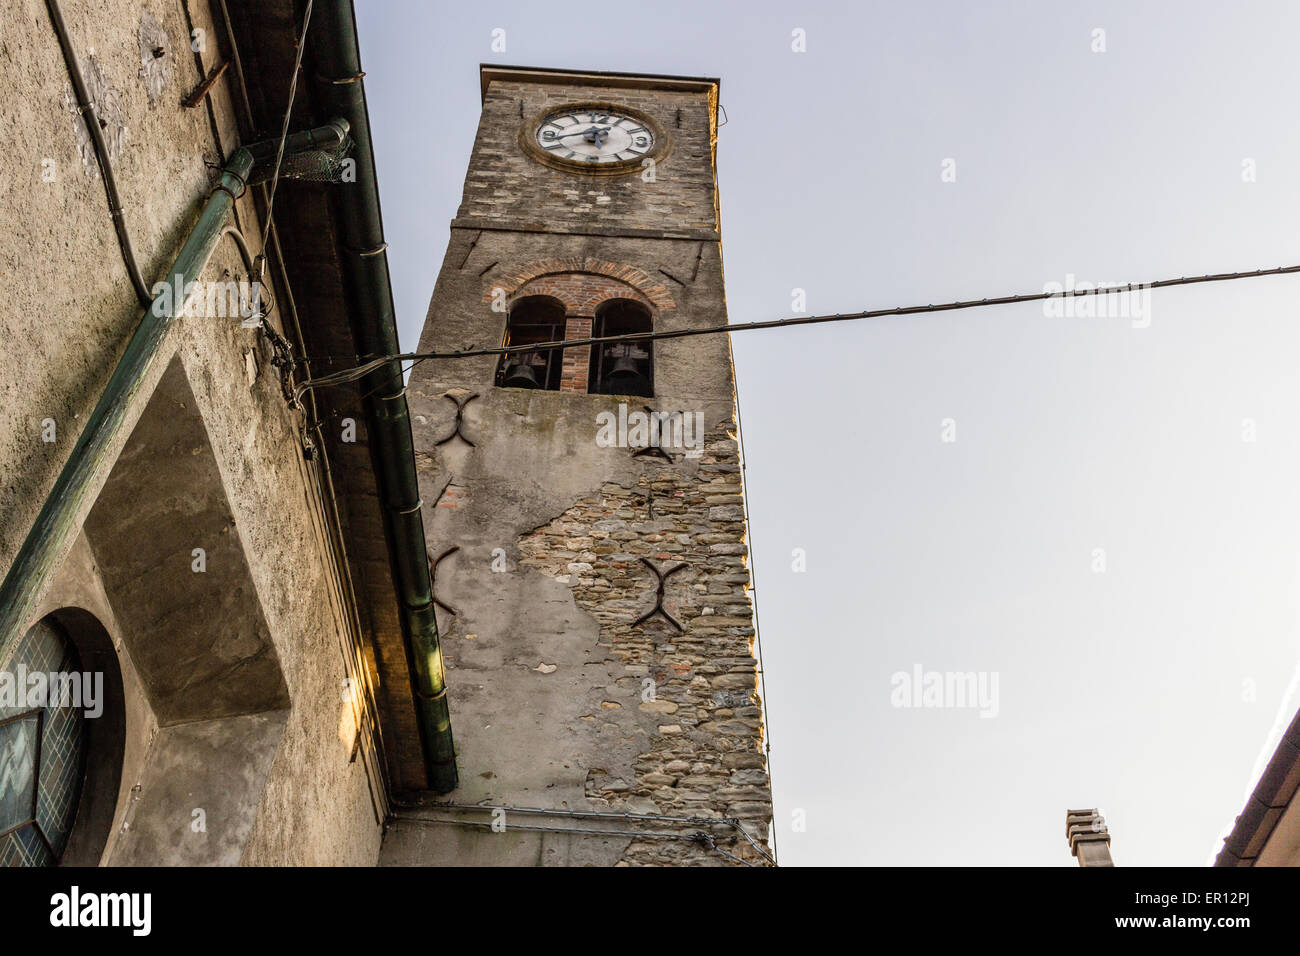 Brickwall médiévale clocher d'une église de campagne en Emilie Romagne dans la campagne du nord de l'Italie. Réveil à 17:40 Banque D'Images